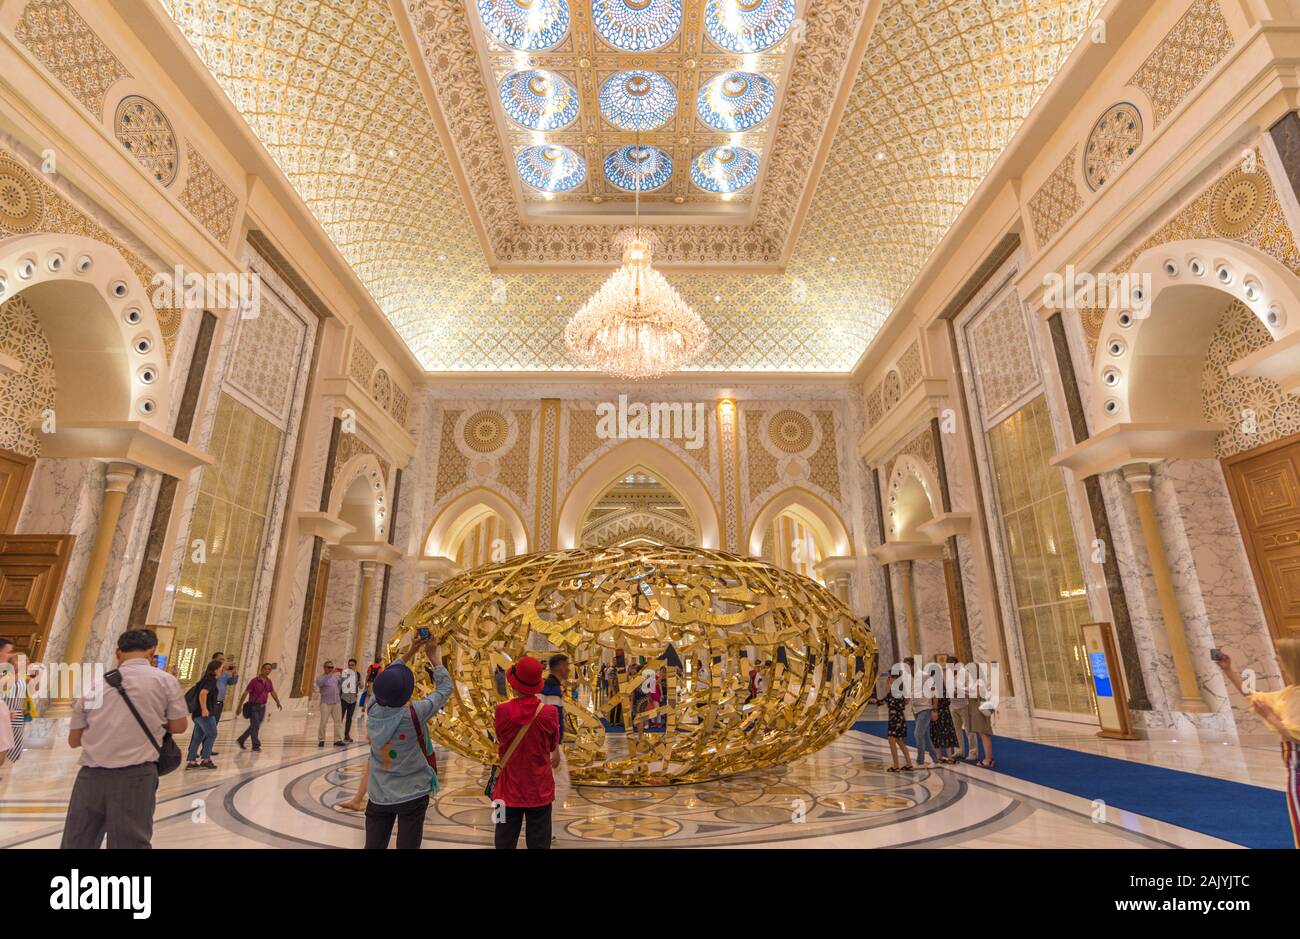 Abu Dhabi, Emiratos Árabes Unidos: los suntuosos interiores del Palacio Presidencial (Qasr Al Watan), el Palacio de la nación árabe, instalación de arte dorado Foto de stock